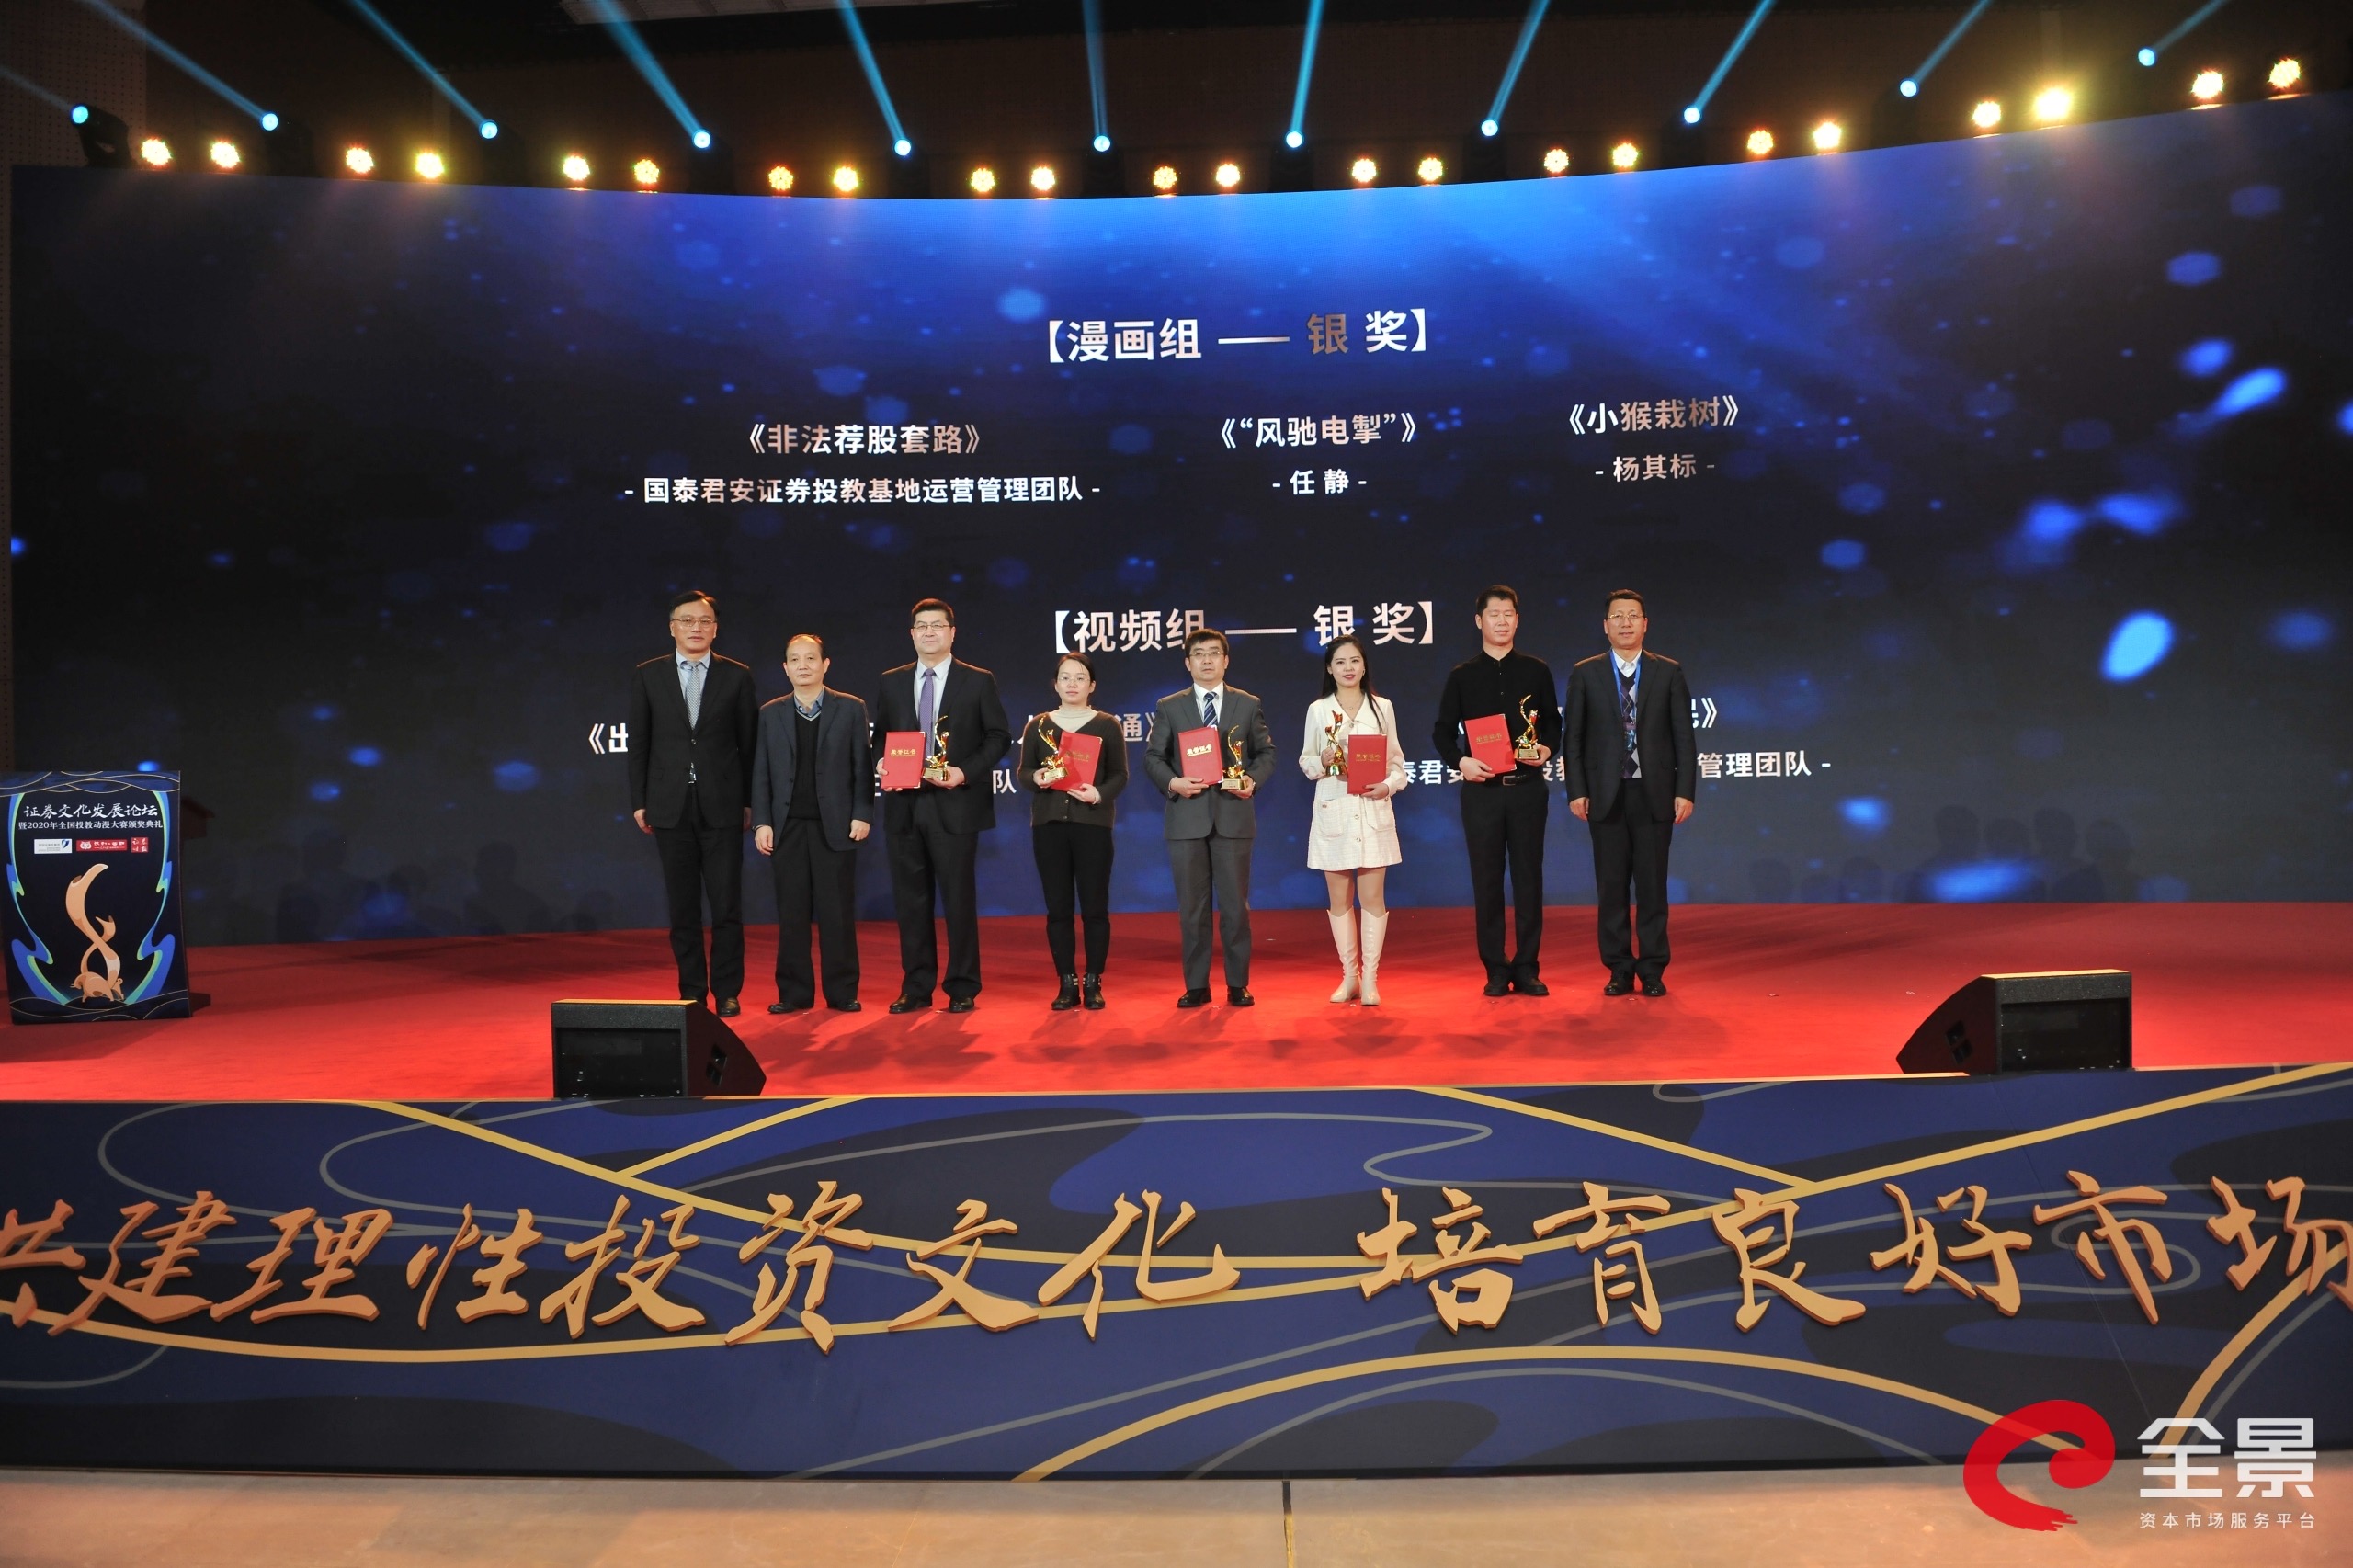 证券文化发展论坛暨全国投教动漫大赛颁奖典礼在京举行